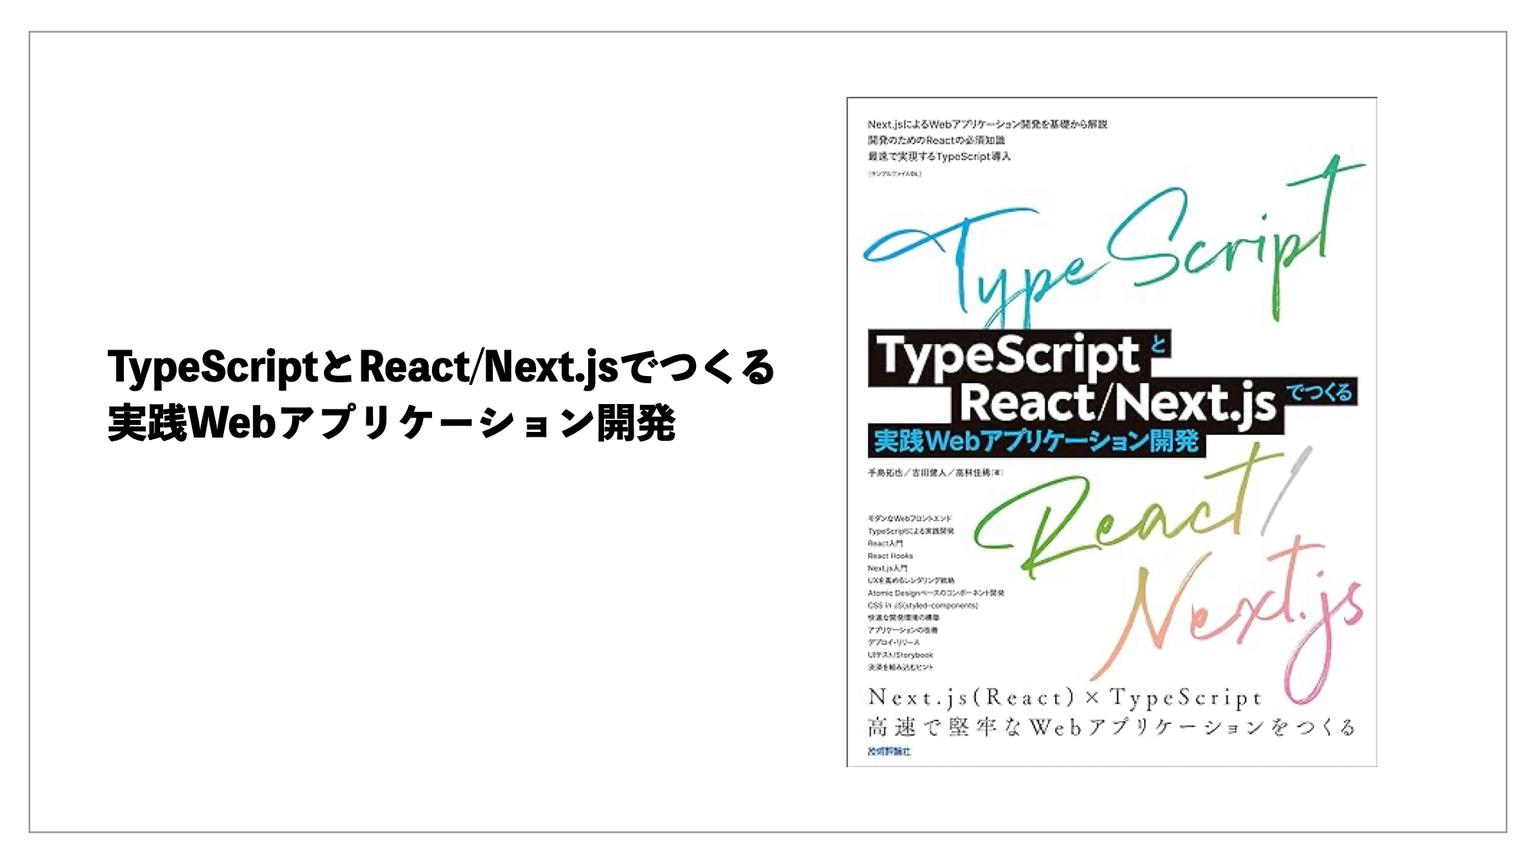 【レビュー part①】TypeScriptとReact/Next.jsでつくる実践Webアプリケーション開発